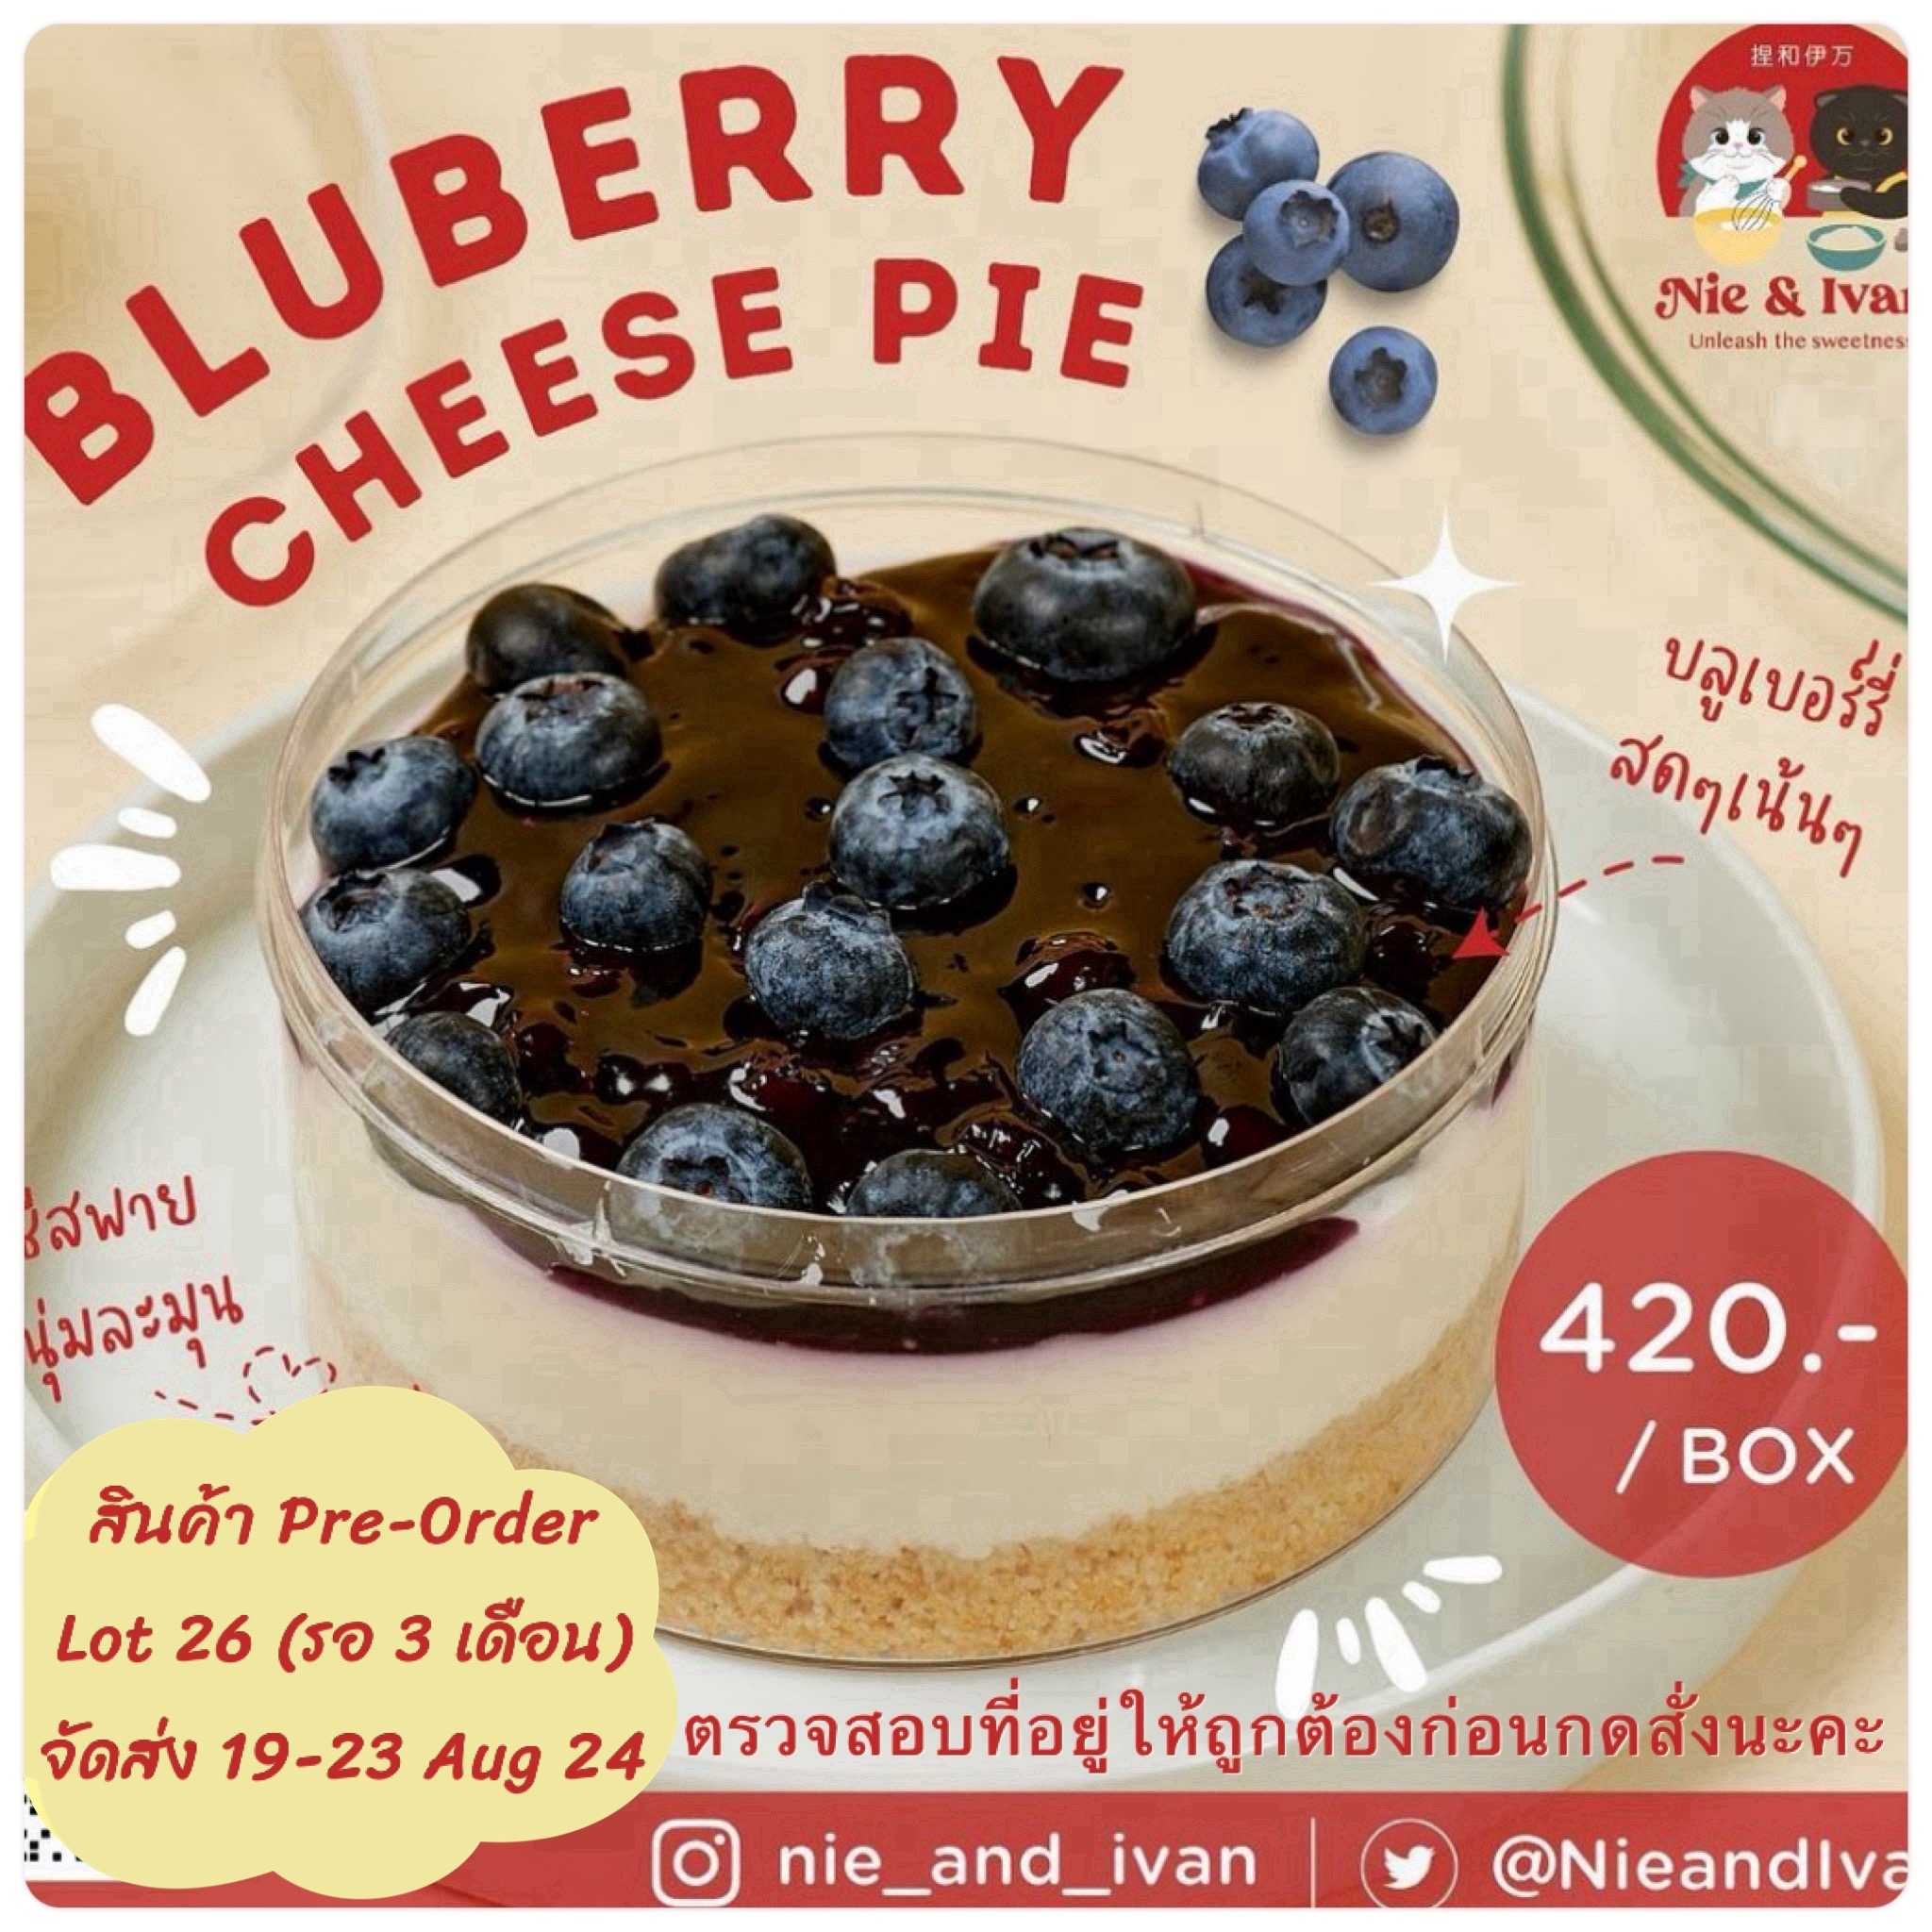 Blueberry cheese pie Lot26 (จัดส่งวันที่ 19-23 สิงหาคม) ขนมยอดนิยม